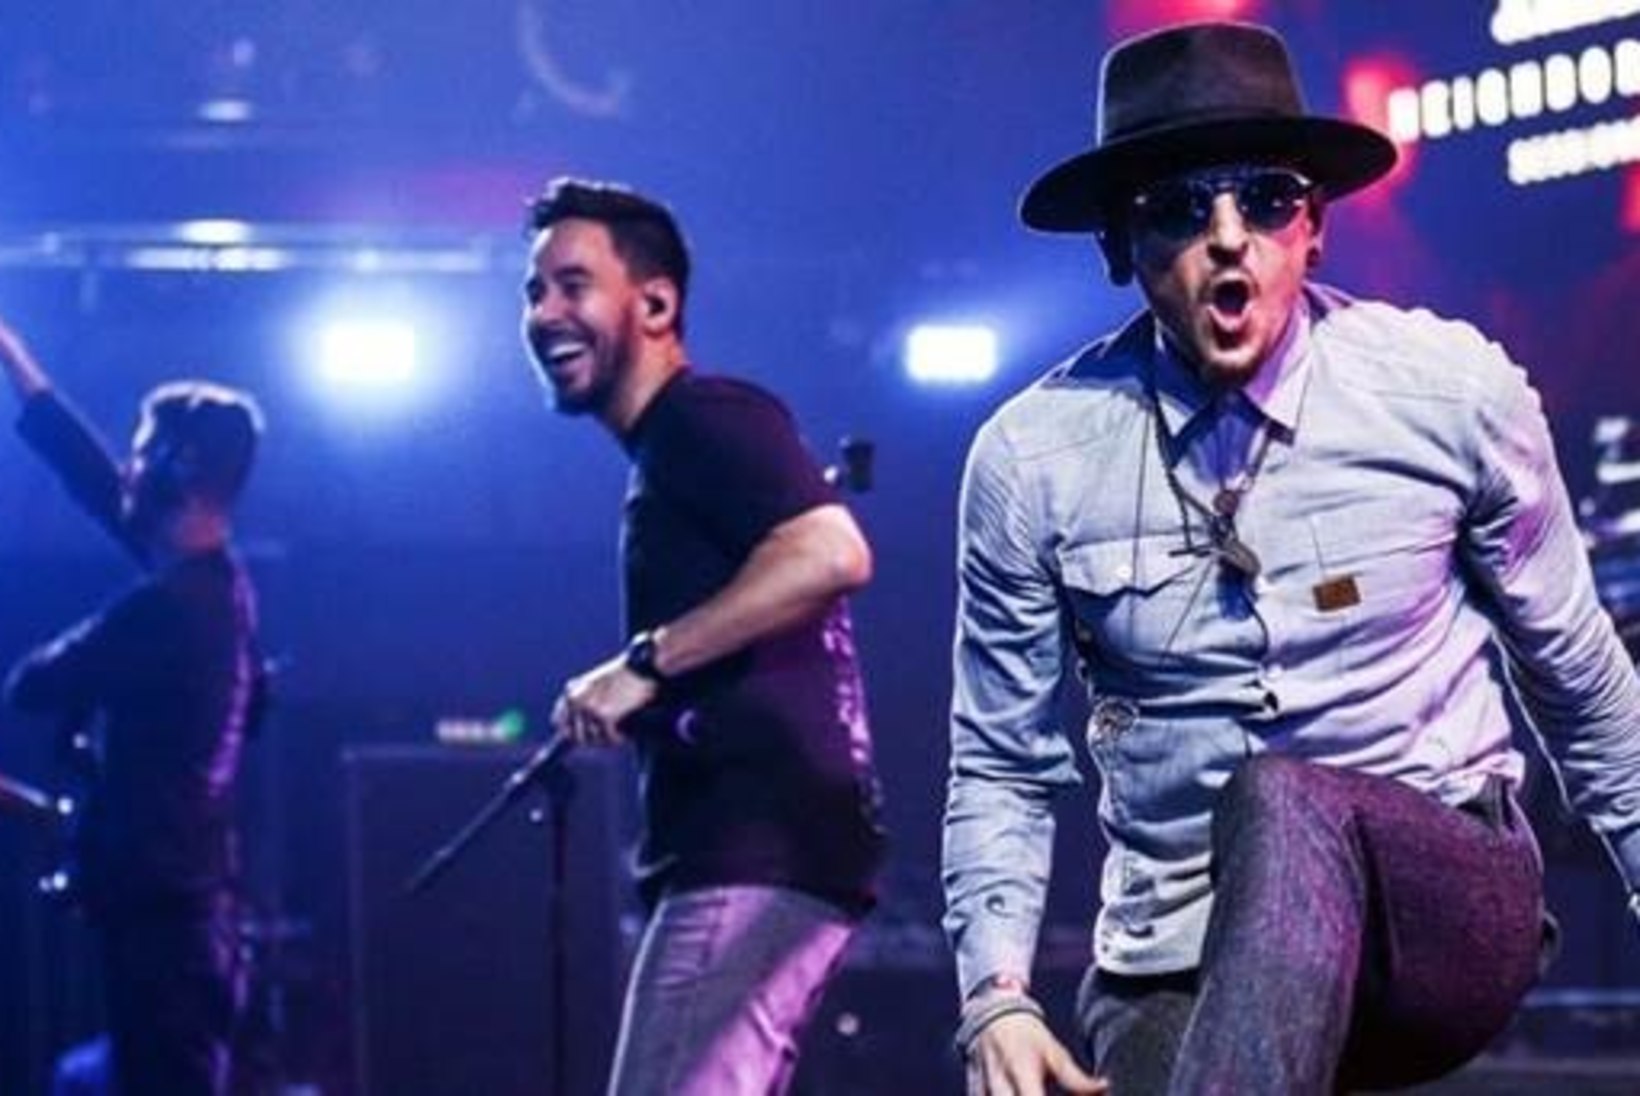 Chester Benningtoni mälestuseks: Linkin Park avaldas albumi, kus on viimased laulud nende ühiselt kontsertturneelt